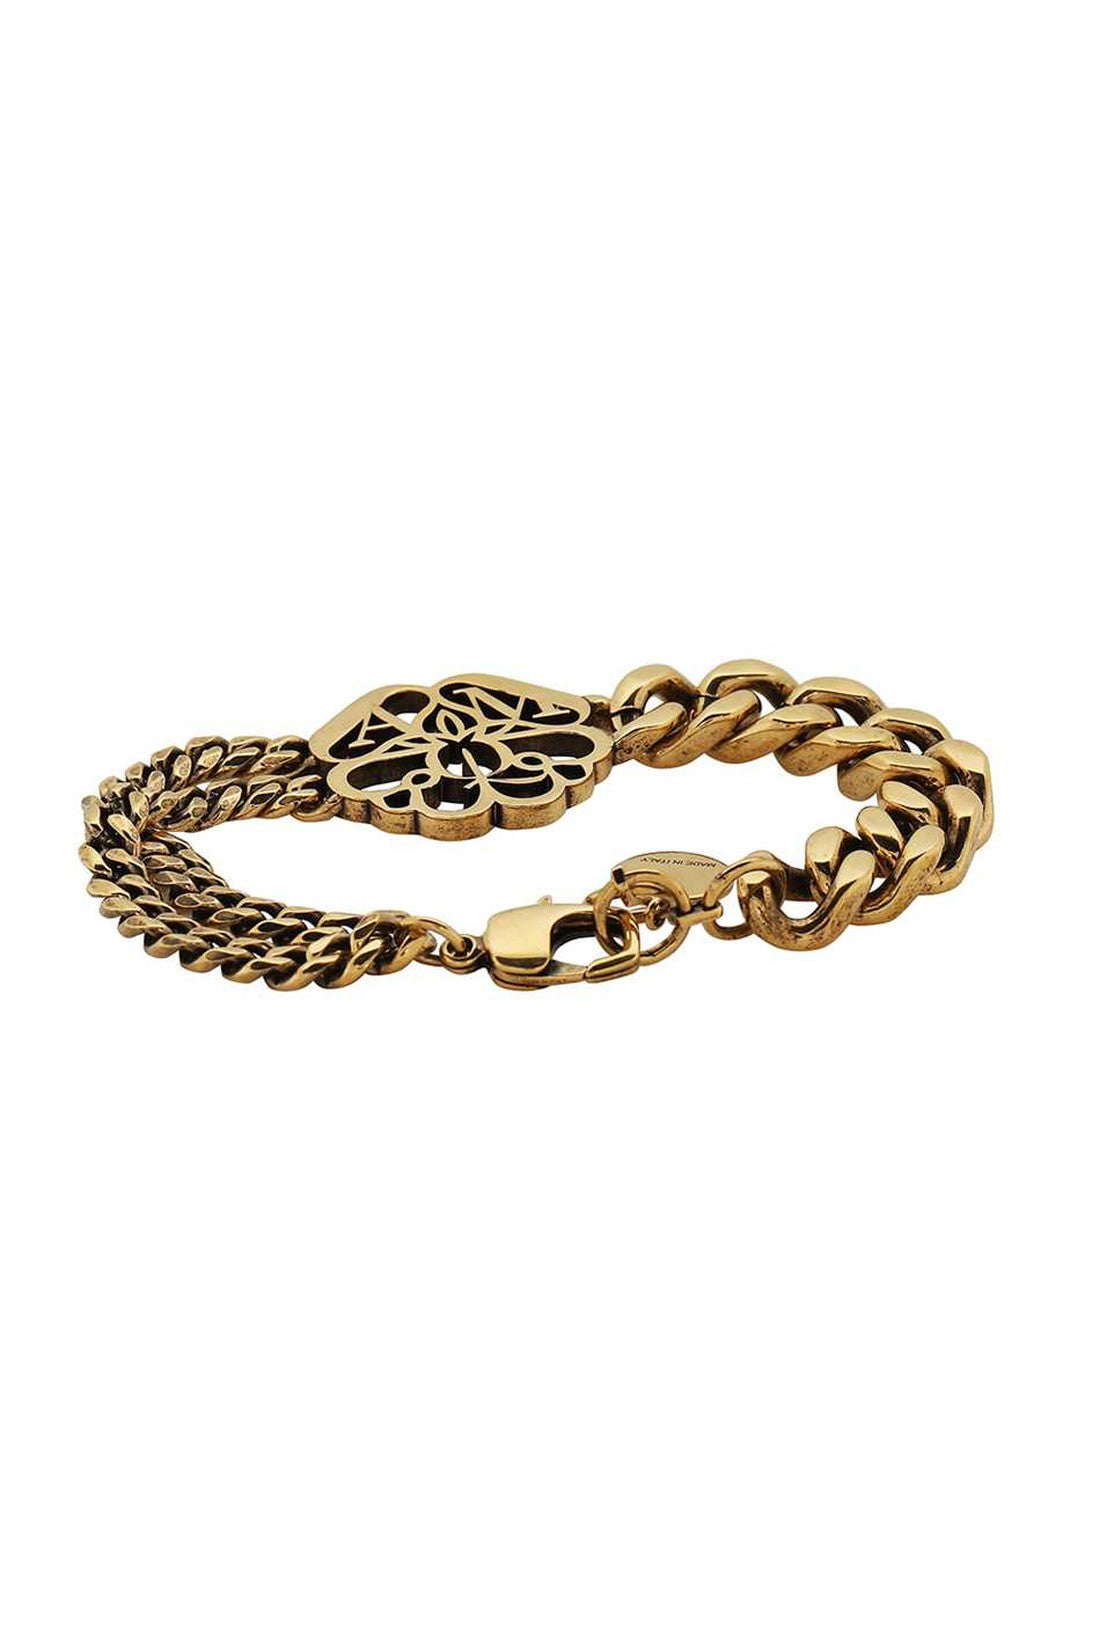 Gold-toner brass bracelet